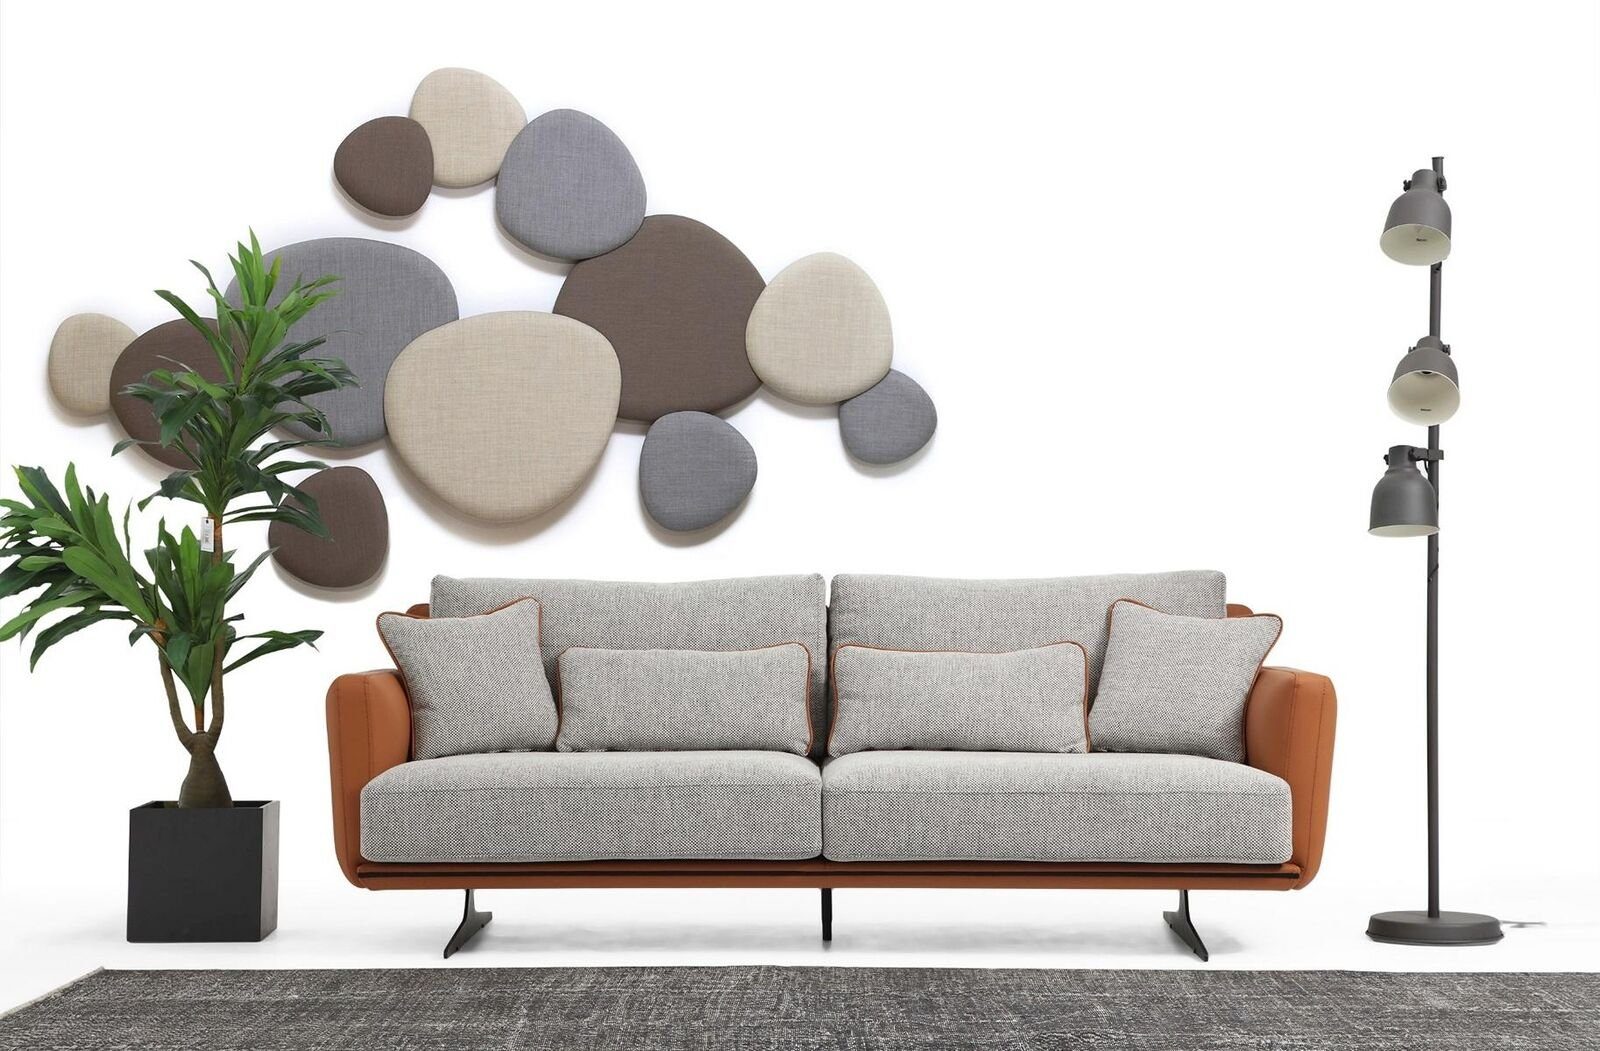 JVmoebel 2-Sitzer Zweisitzer Sofa 2 Sitzer Stoff Orange Modern Design Wohnzimmer Grau, 1 Teile, Made in Europa | Einzelsofas